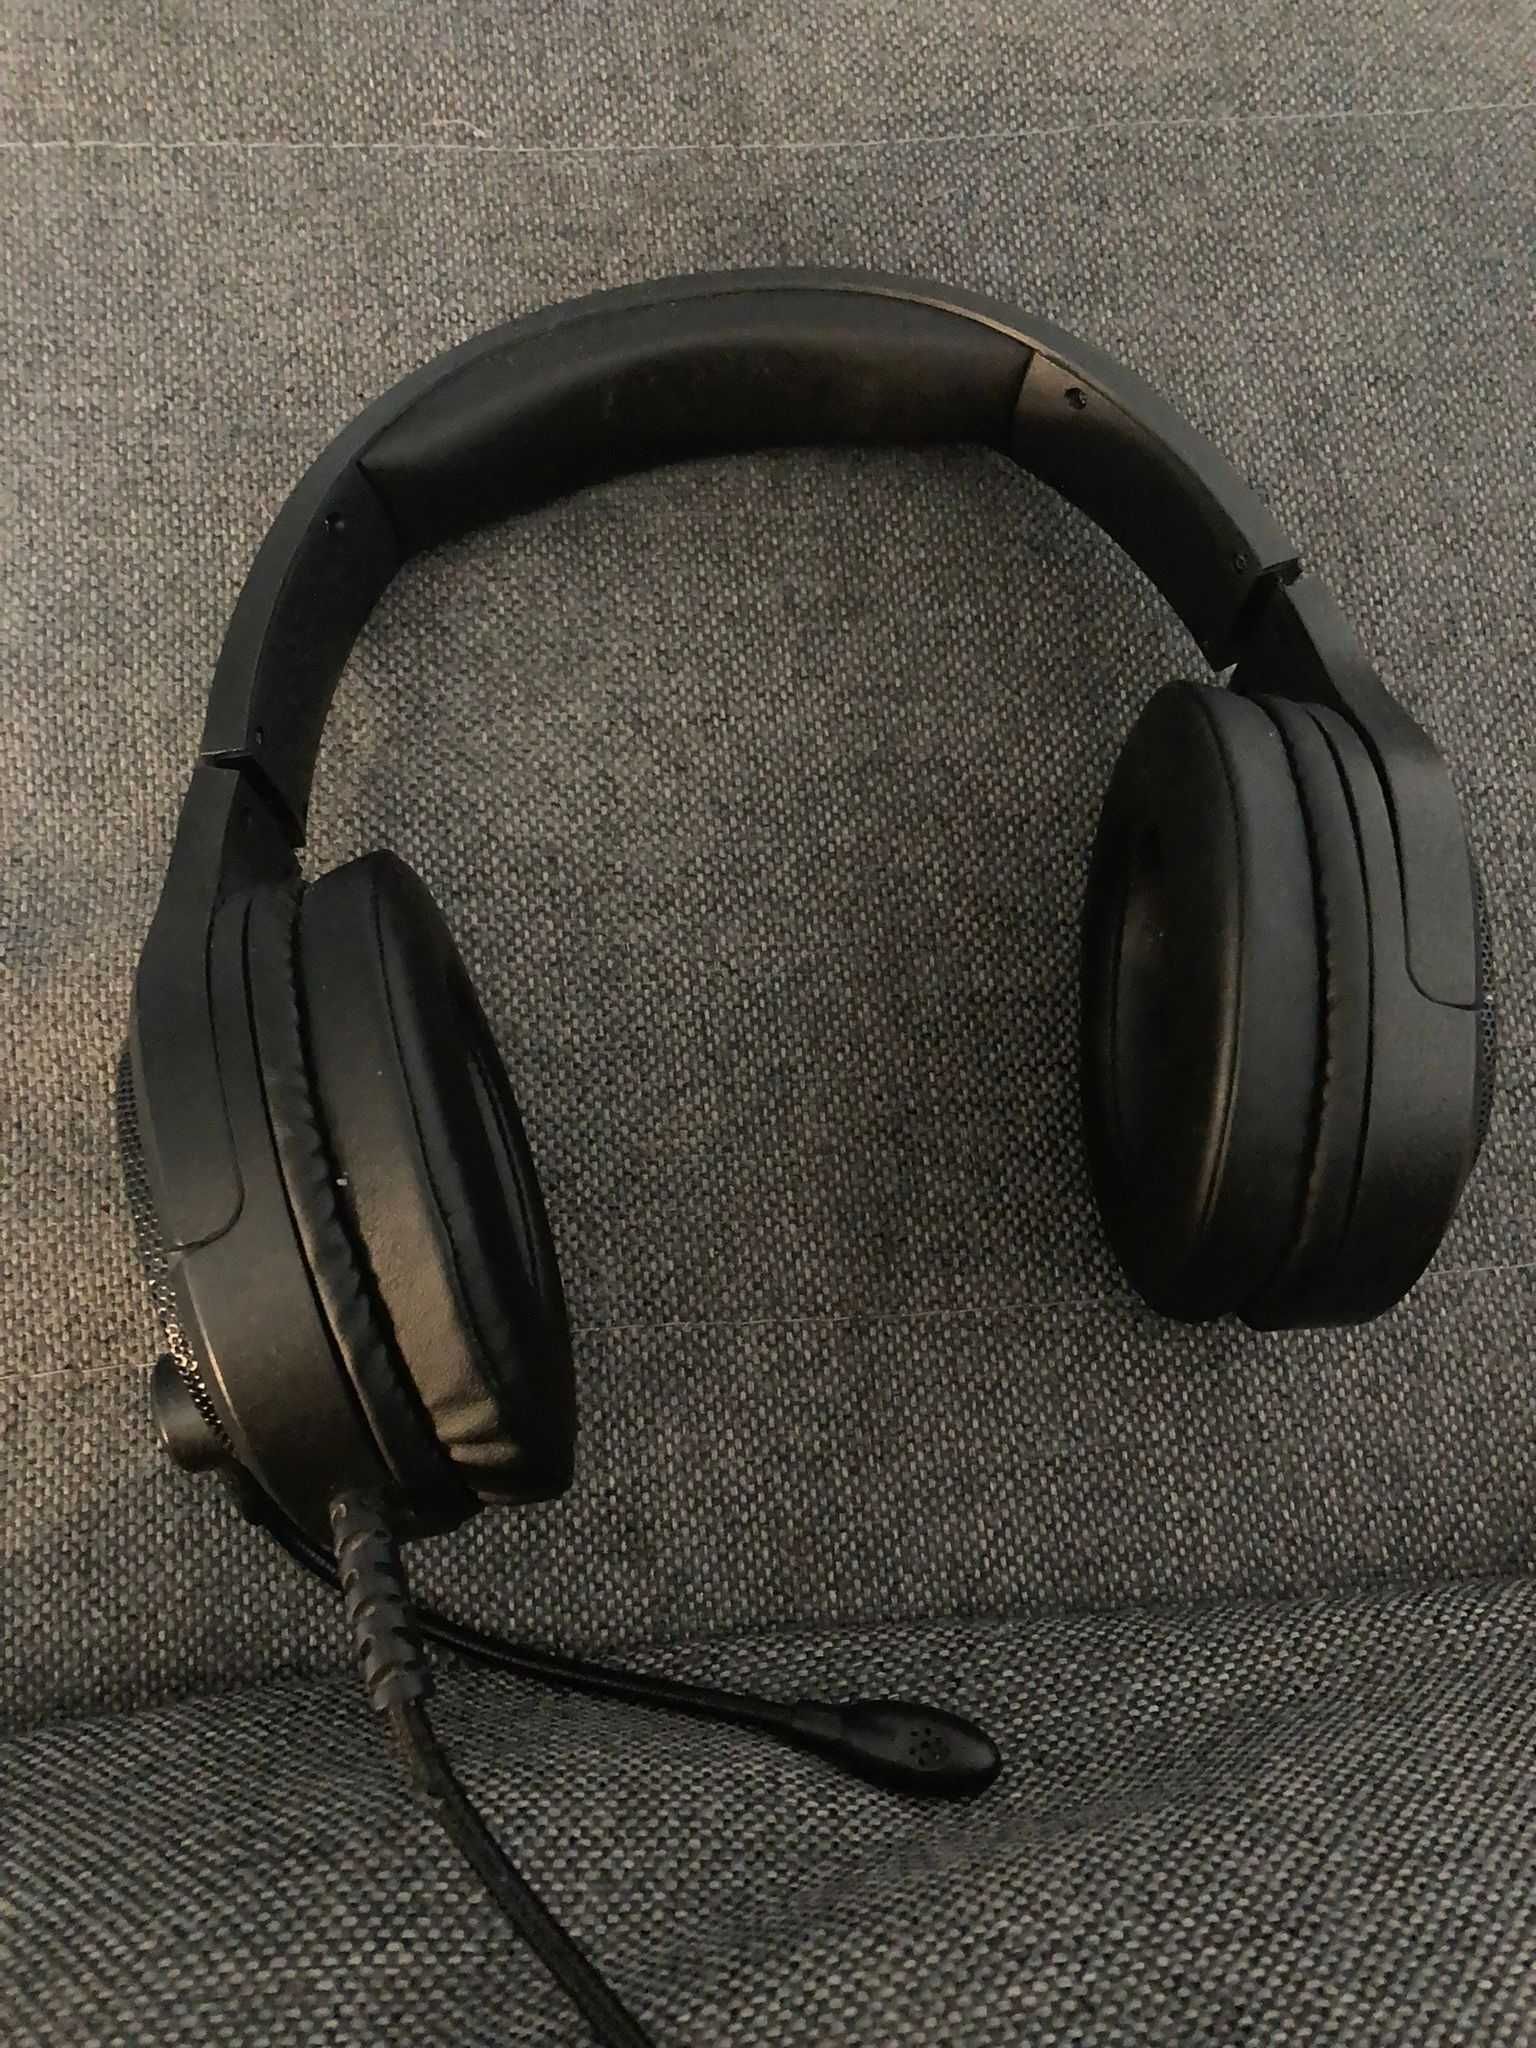 Słuchawki KRUX Popz KRX0091 RGB